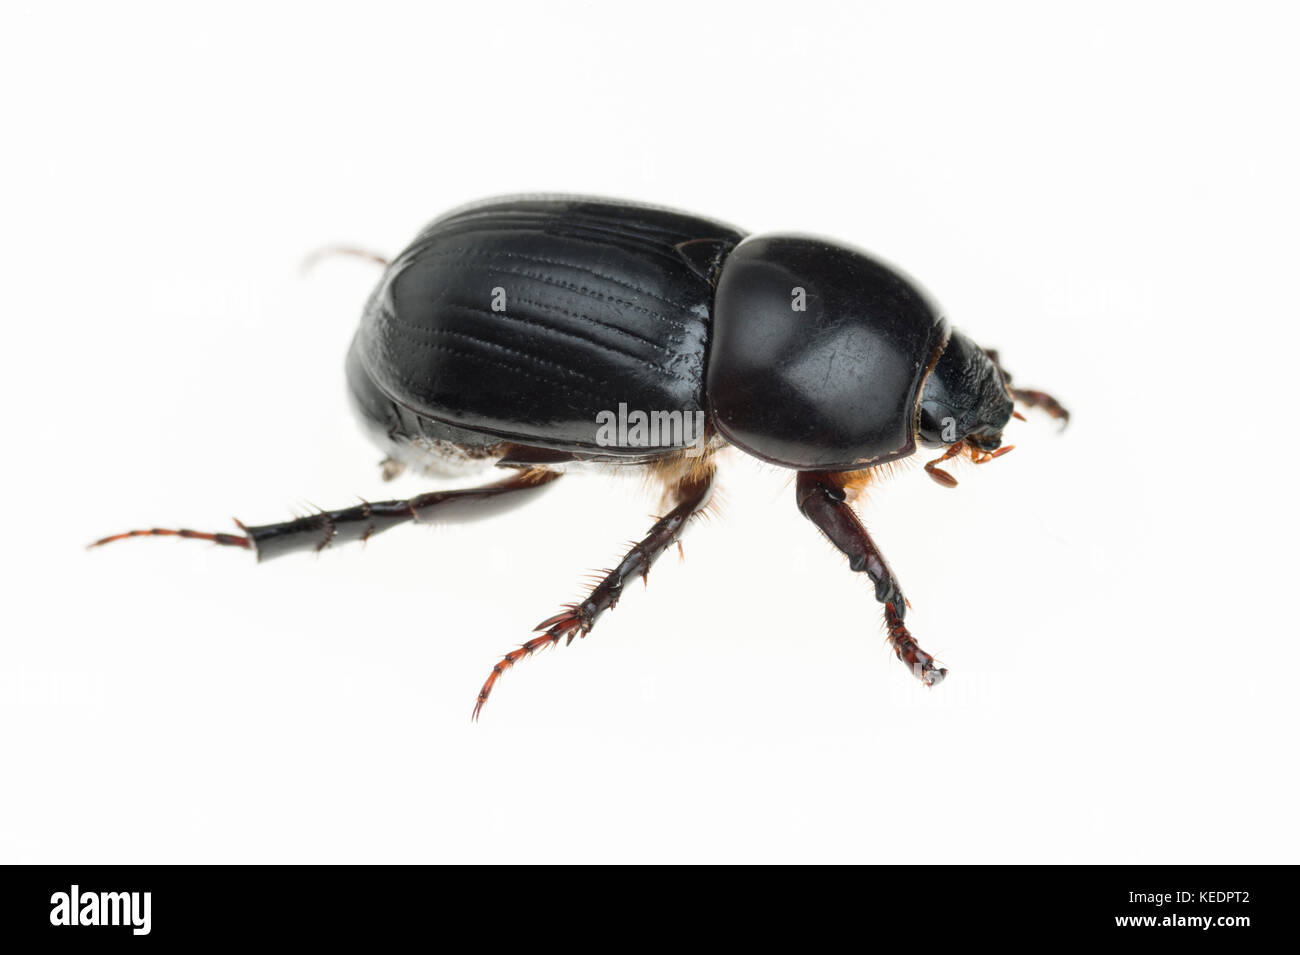 African Black Beetle (Heteronychus arator) ist eine eingeführte Pest aus dem südlichen Afrika, Rasen, Gemüse-, Zier- und einige Früchte. Stockfoto